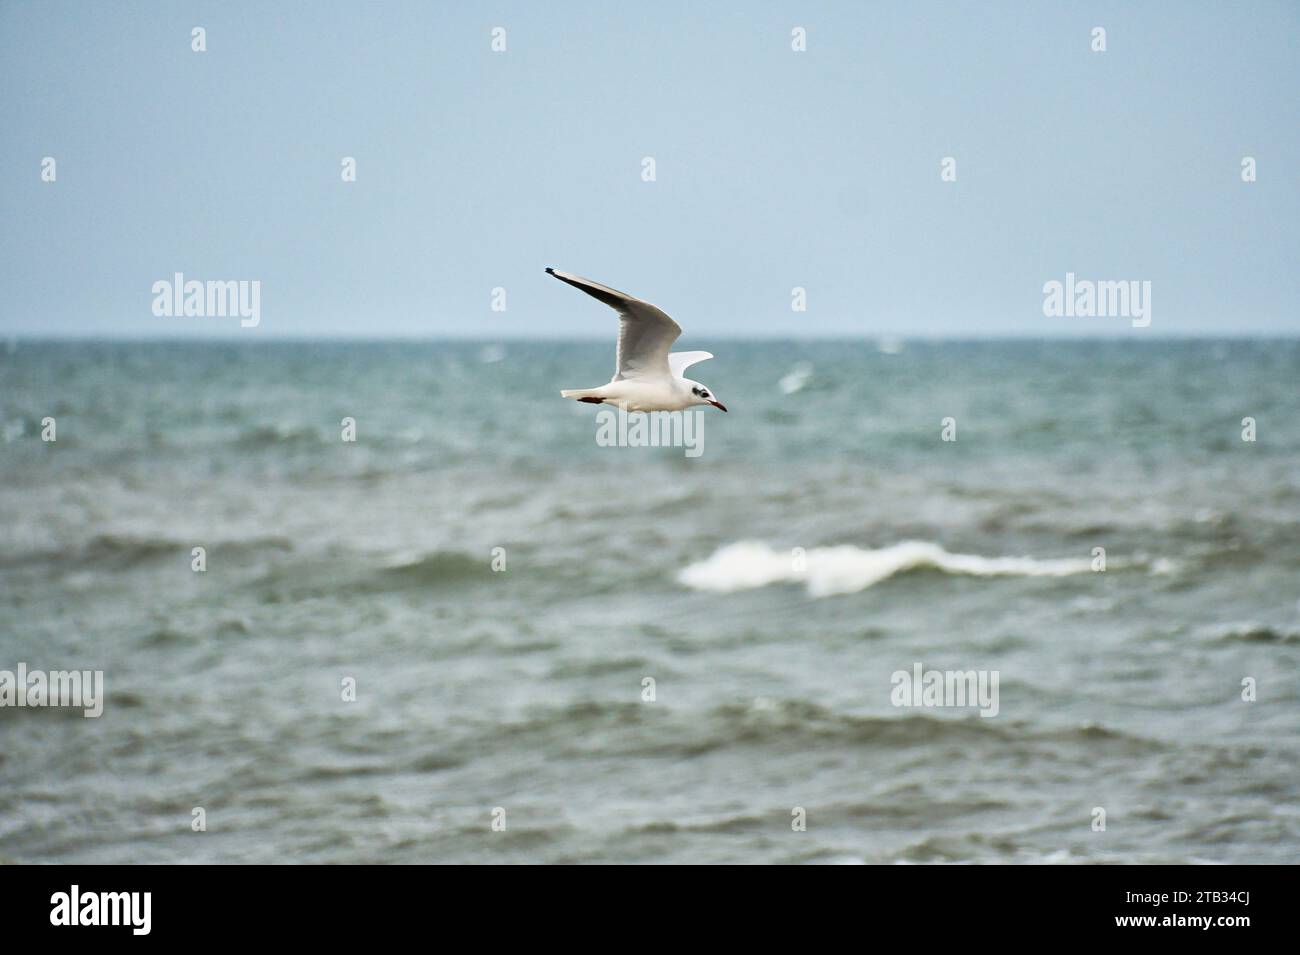 Seagull survole la mer Baltique sur la côte en face de la plage. Photo d'animal d'un oiseau. Banque D'Images